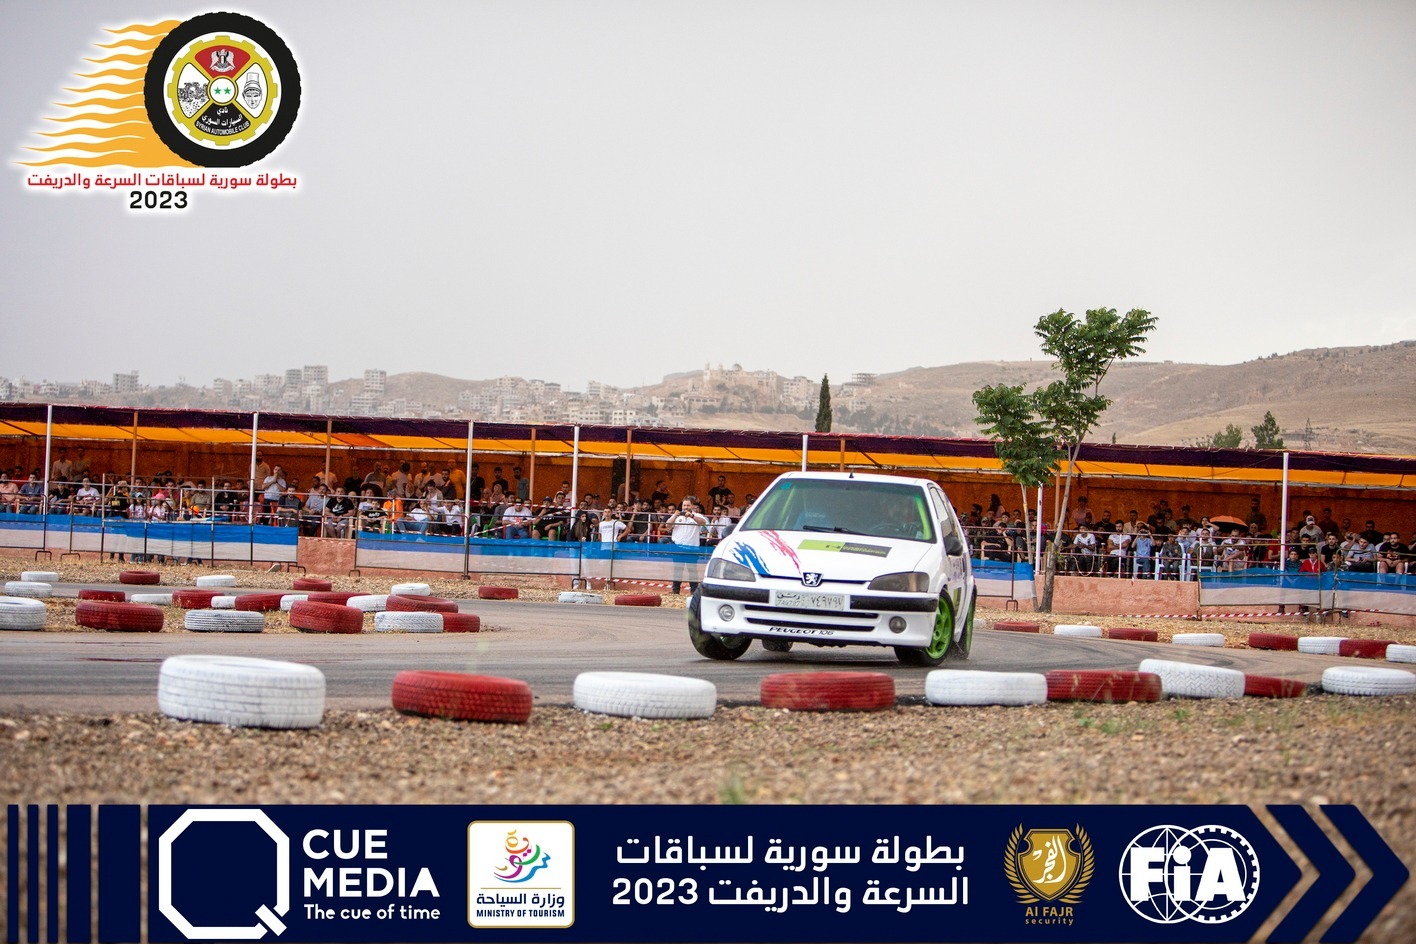 الجمعة... المرحلة الثانية من بطولة سورية لسباقات السرعة والدريفت
